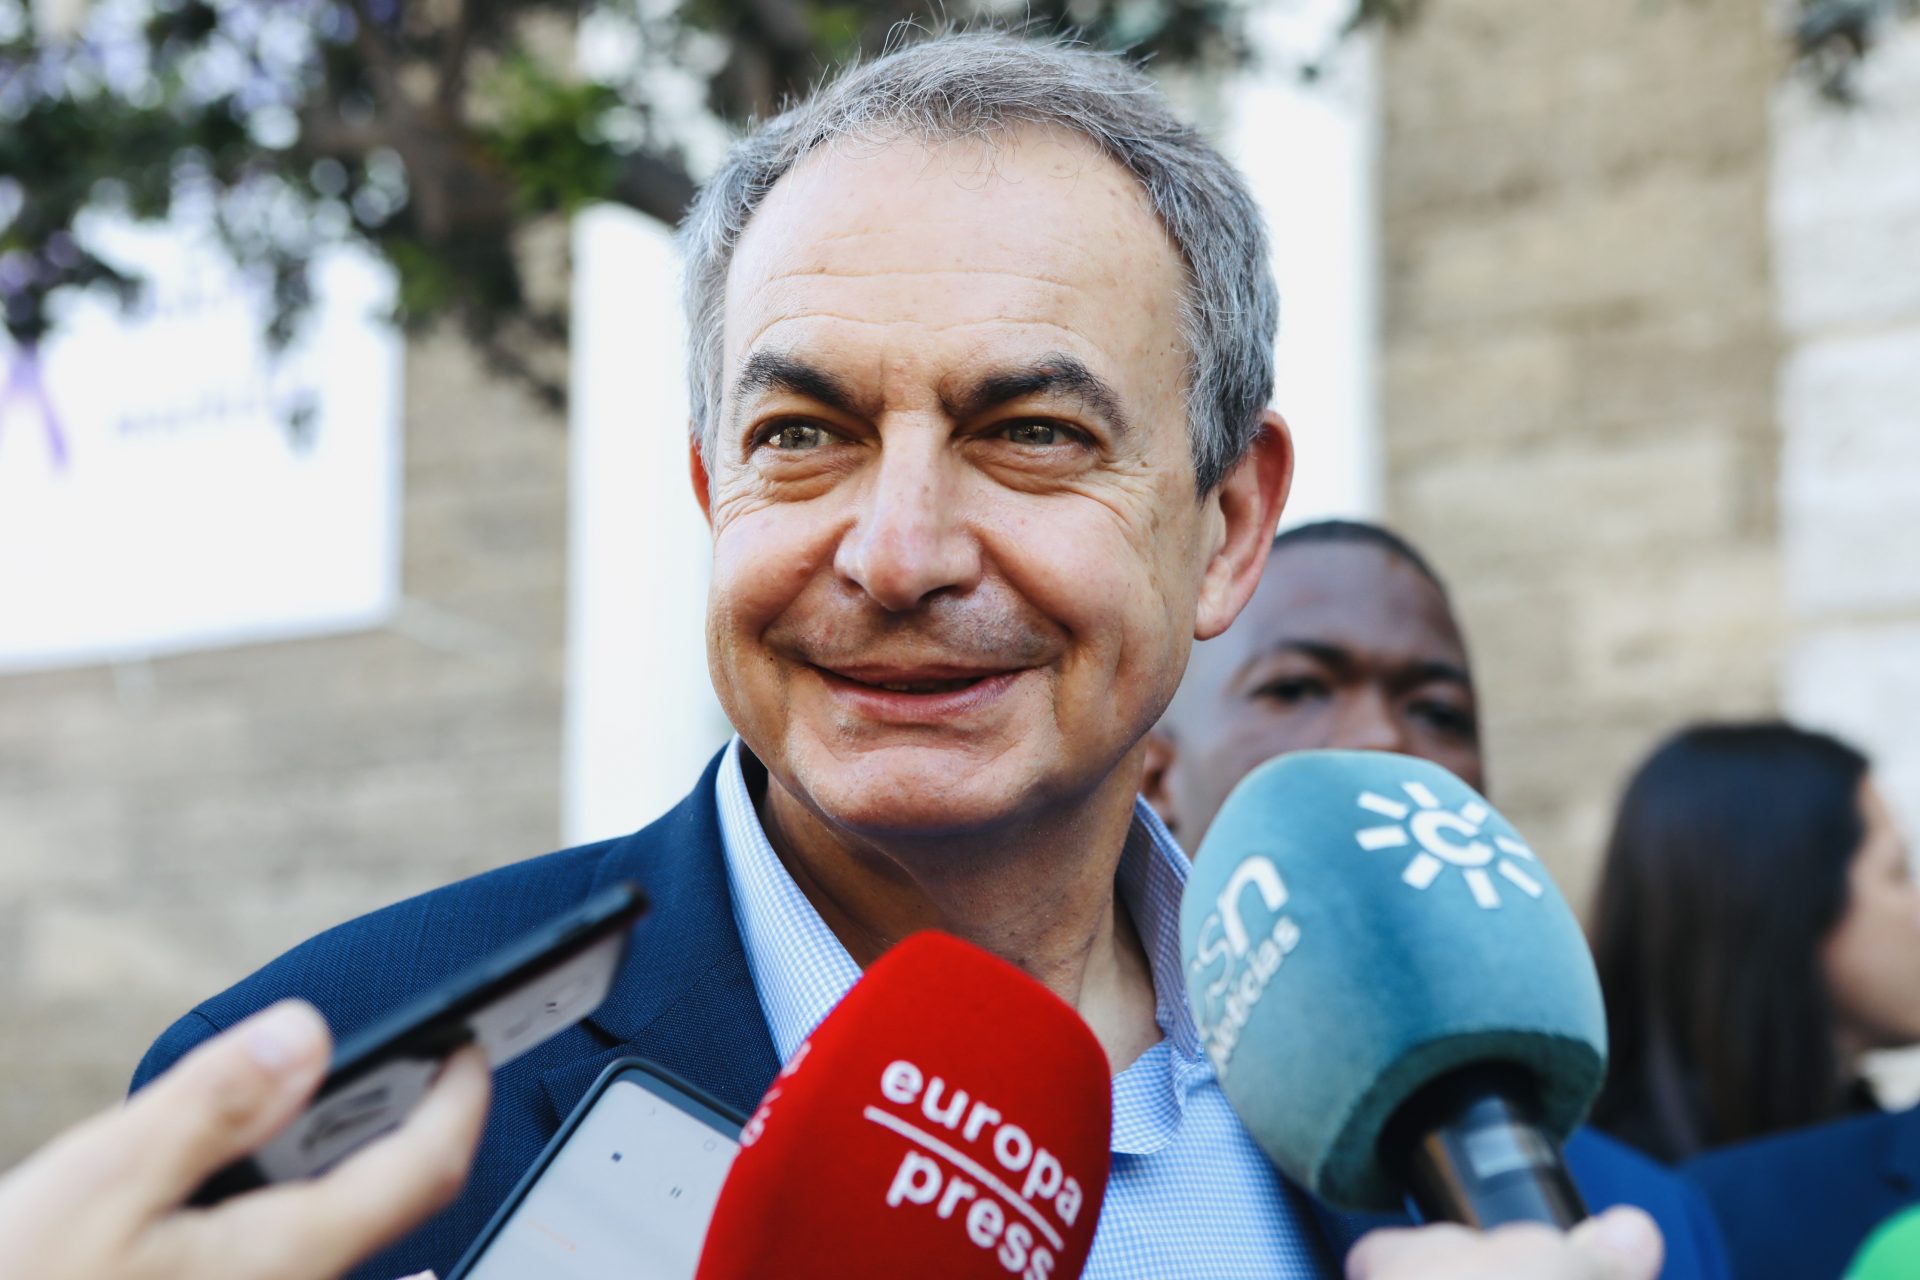 El recadito de Zapatero a Ayuso tras el escándalo de su pareja con Hacienda